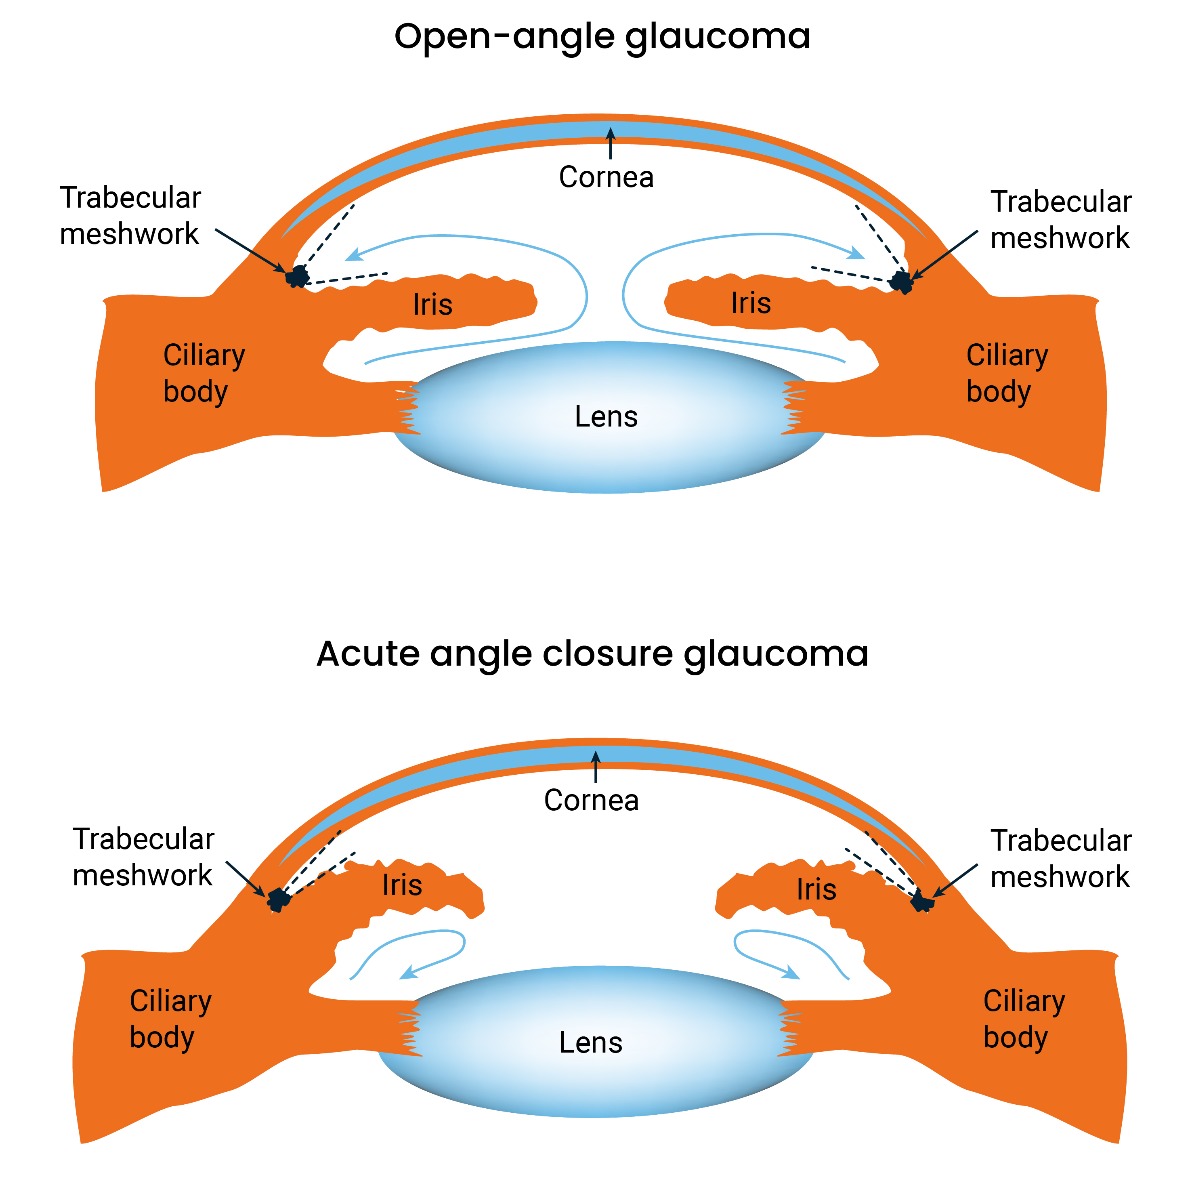 Open angle and acute angle closure glaucoma